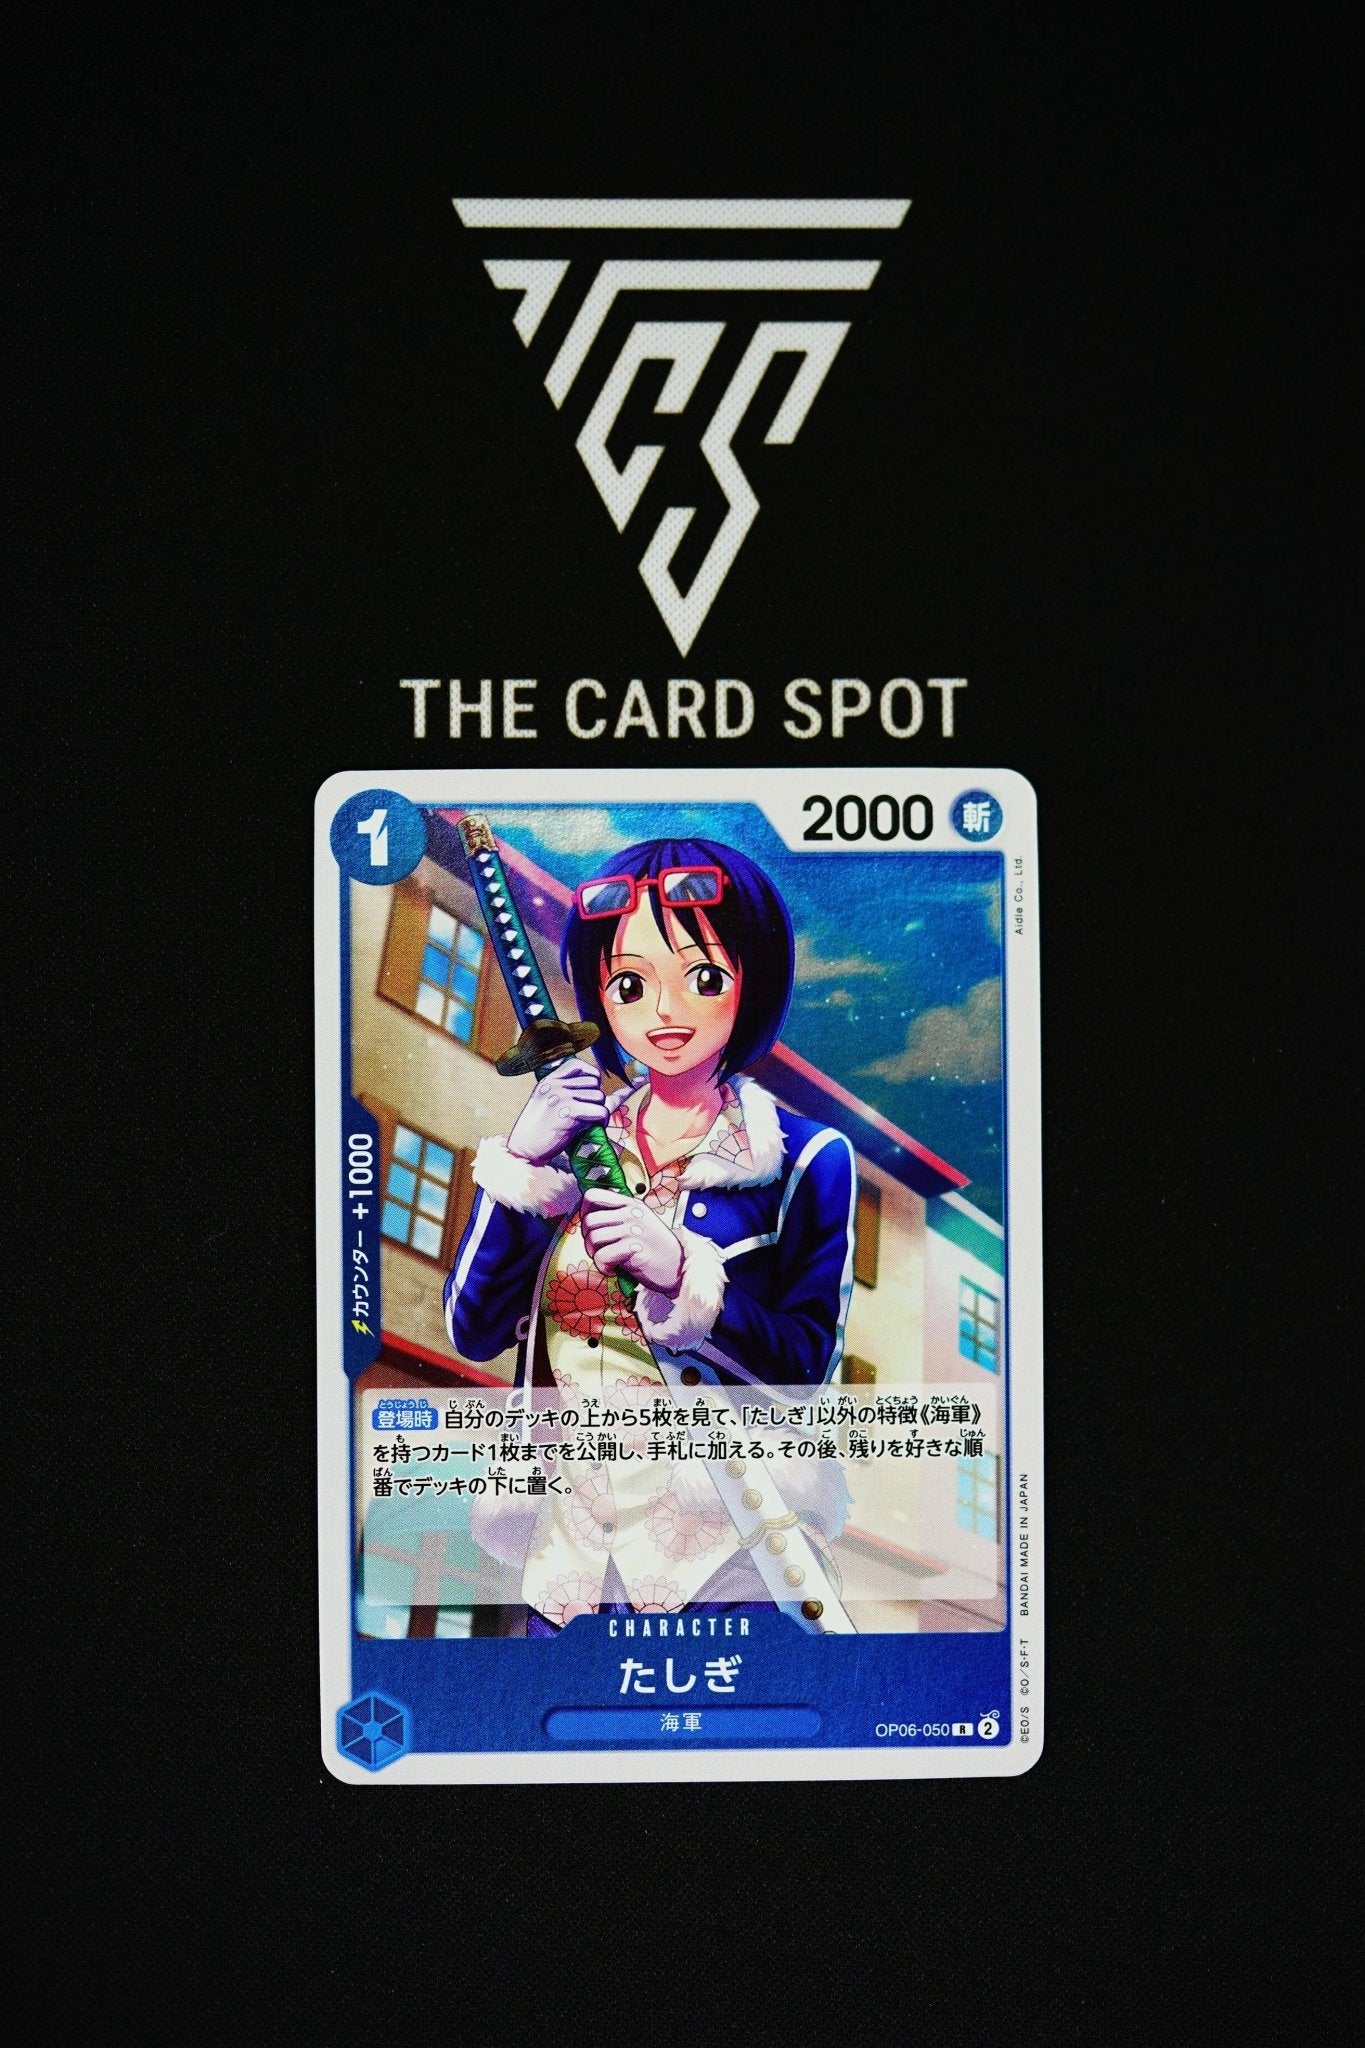 OP06-050 R Tashigi - One Piece - THE CARD SPOT PTY LTD.One Piece CardsONE PIECE